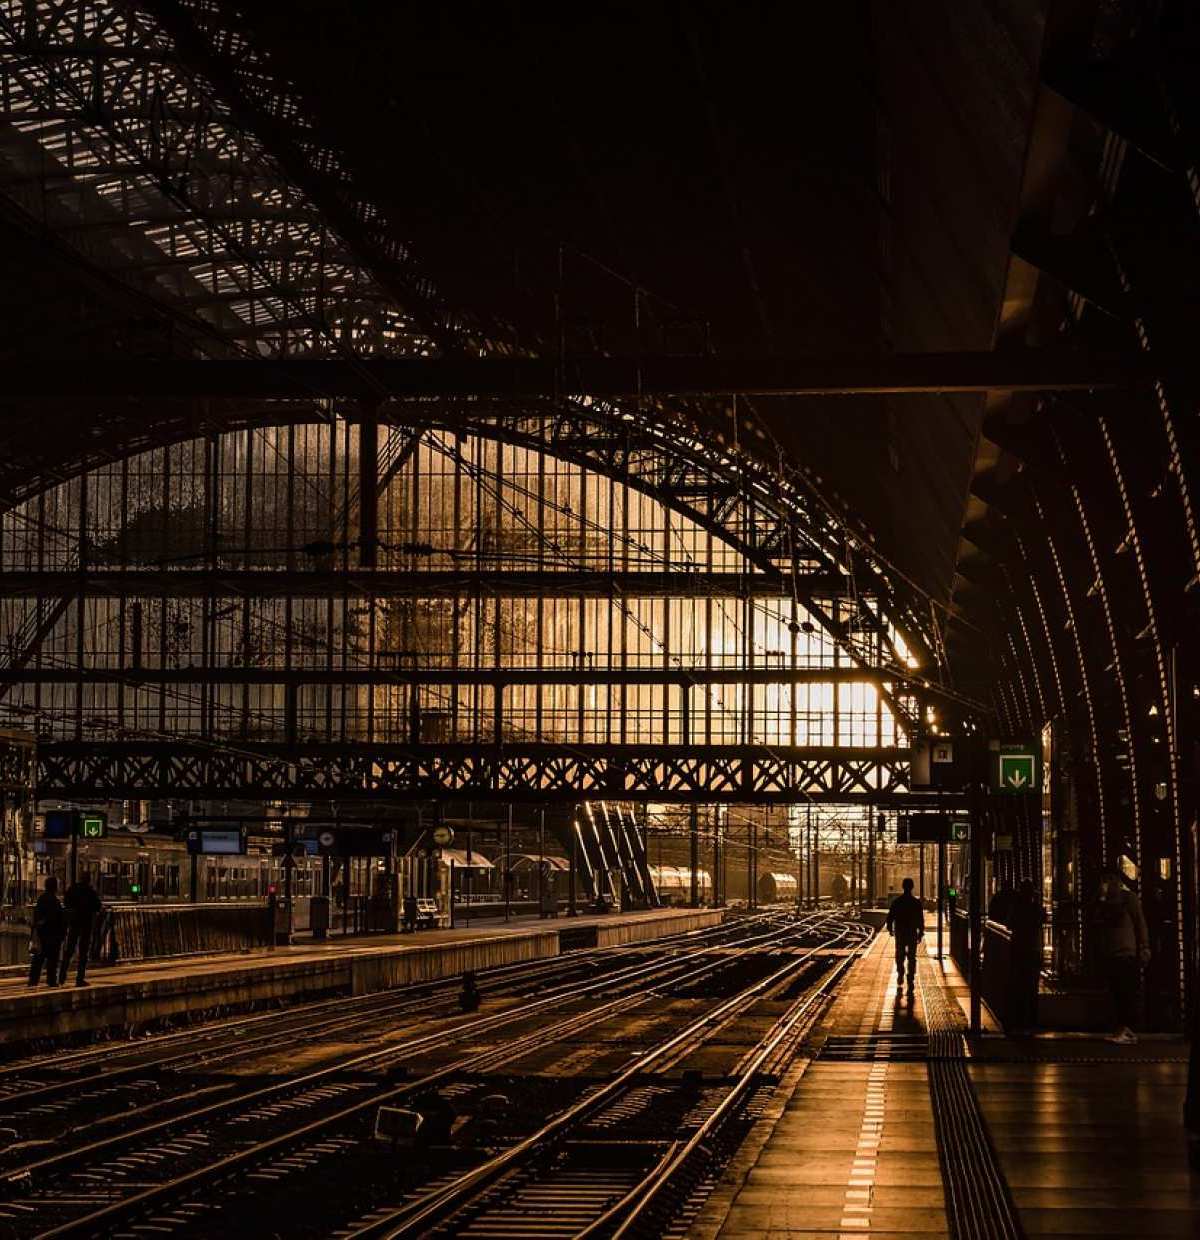 Sind Bahnhöfe die romantischsten Schauplätze der Welt? Besuchen Sie uns und entscheiden Sie selbst.
